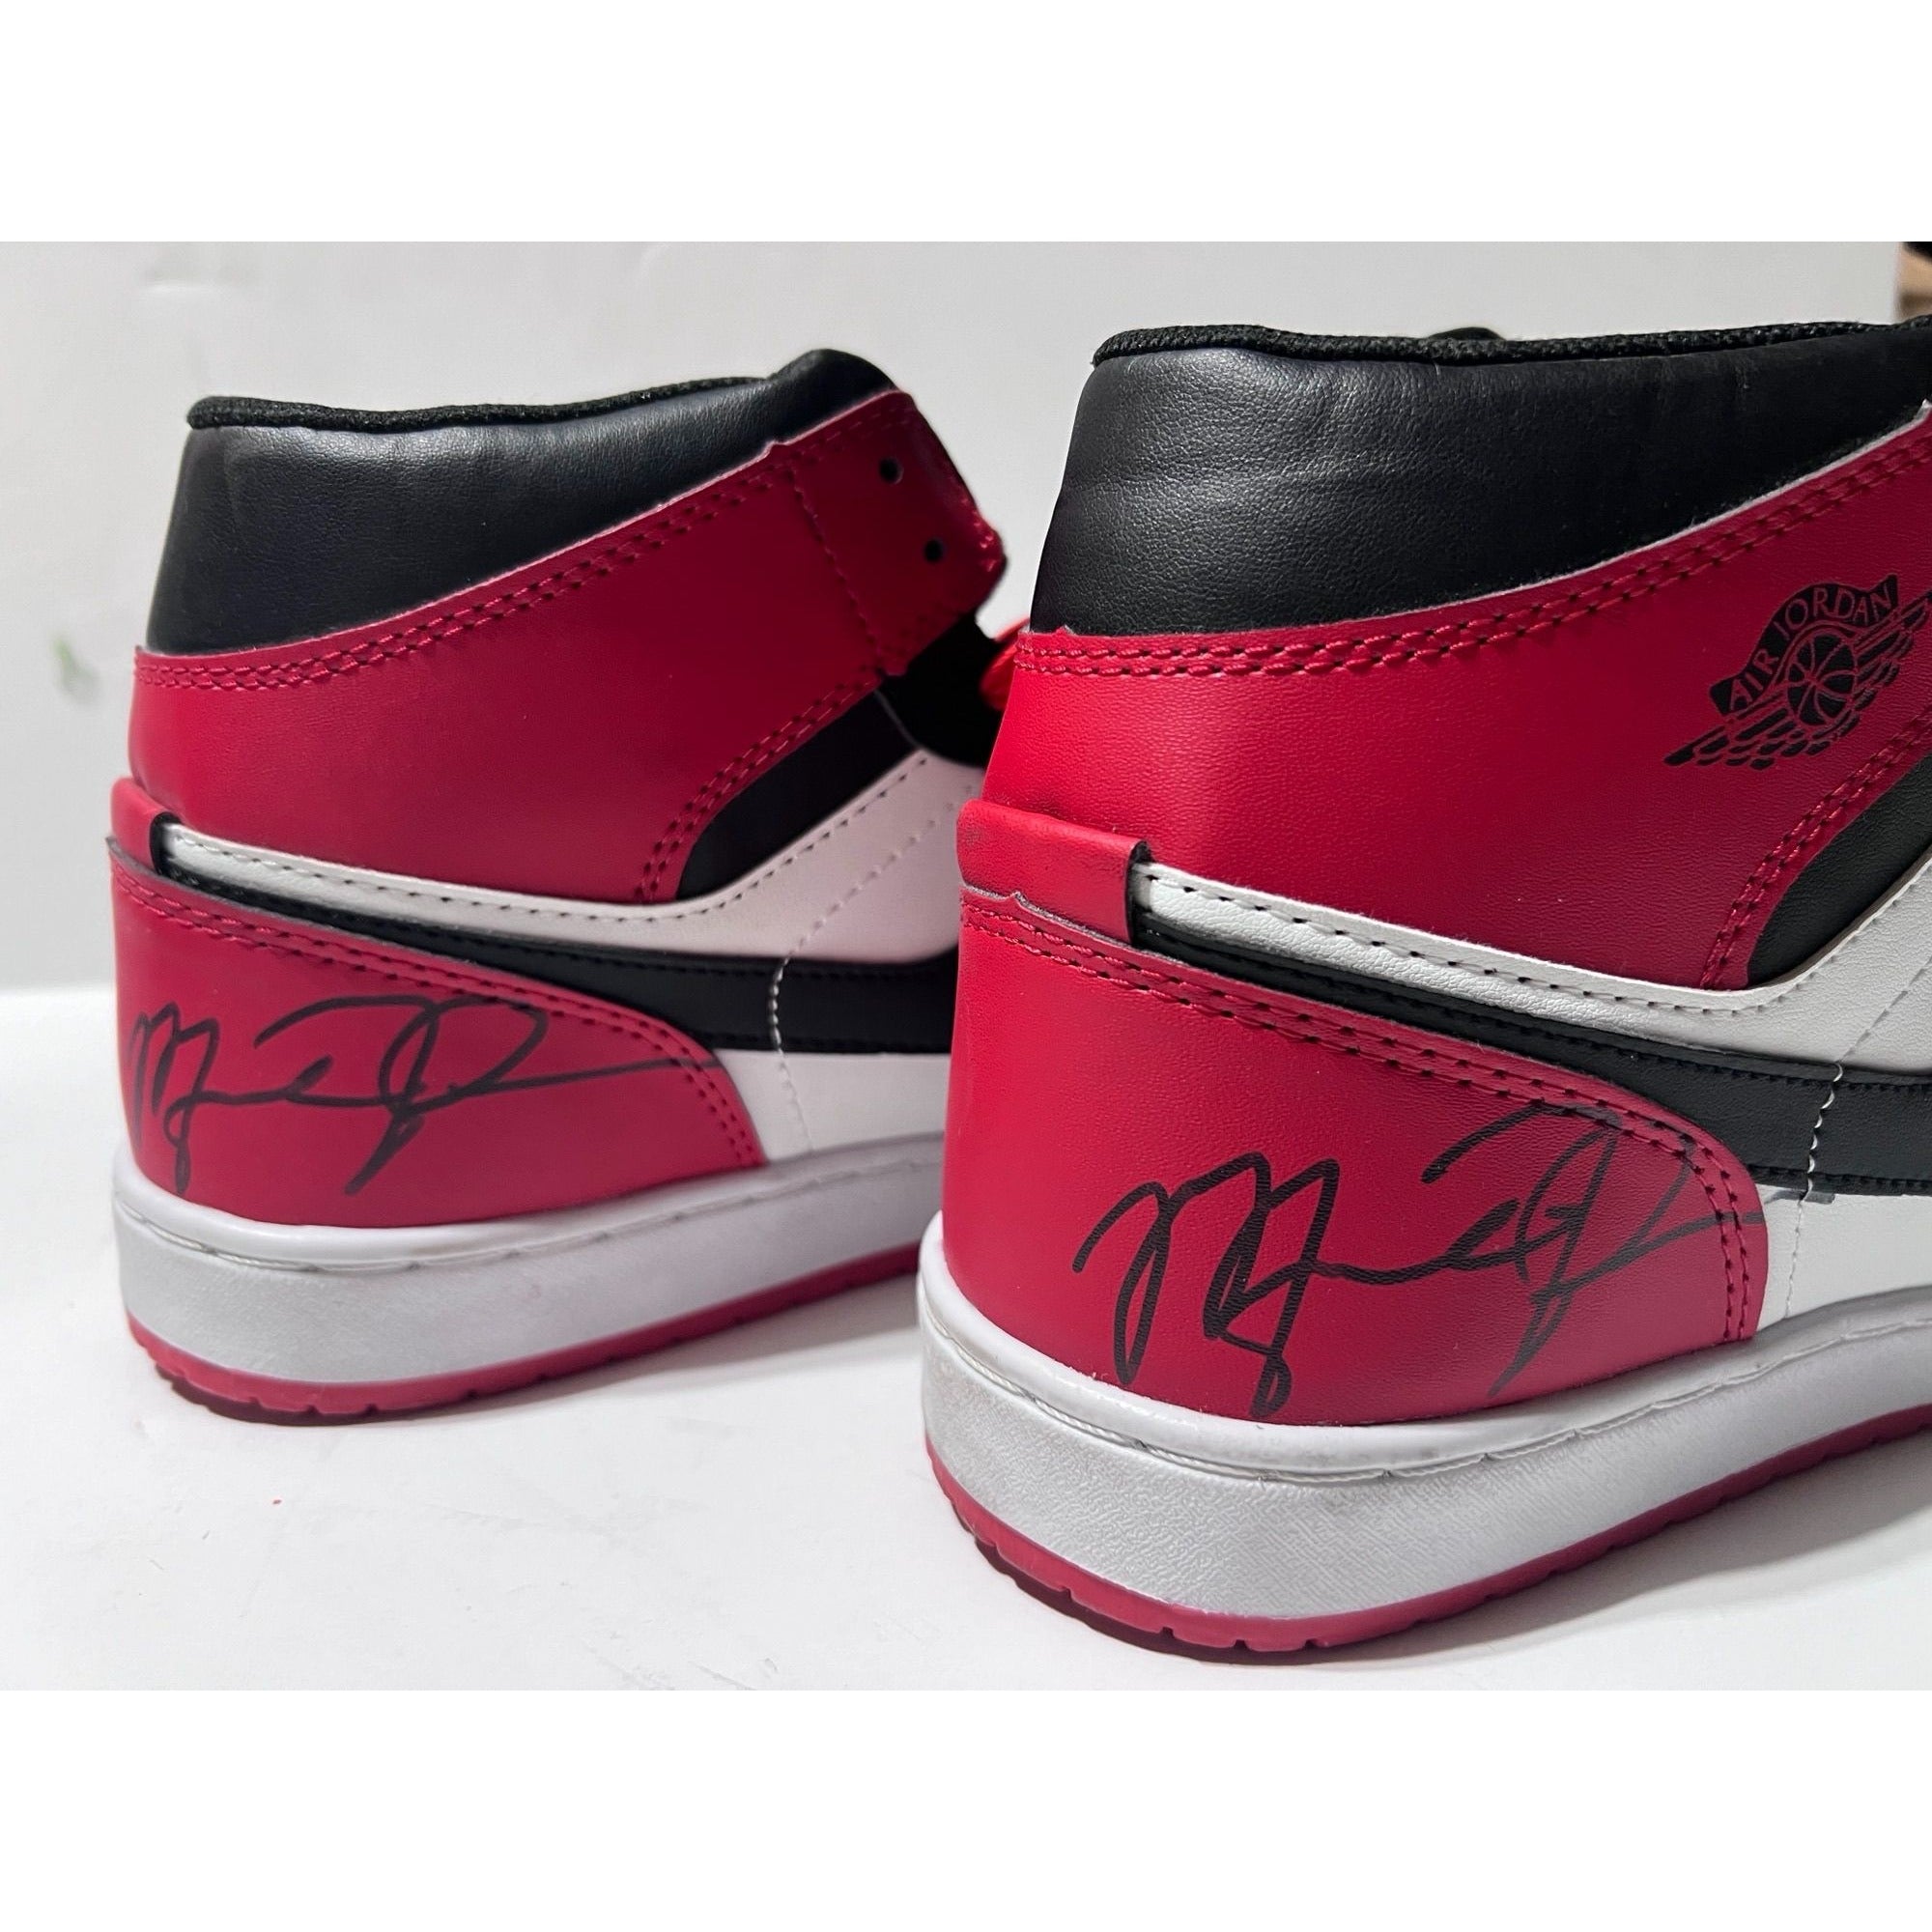 Michael Jordan Air Jordan Nike  shoes signed with proof